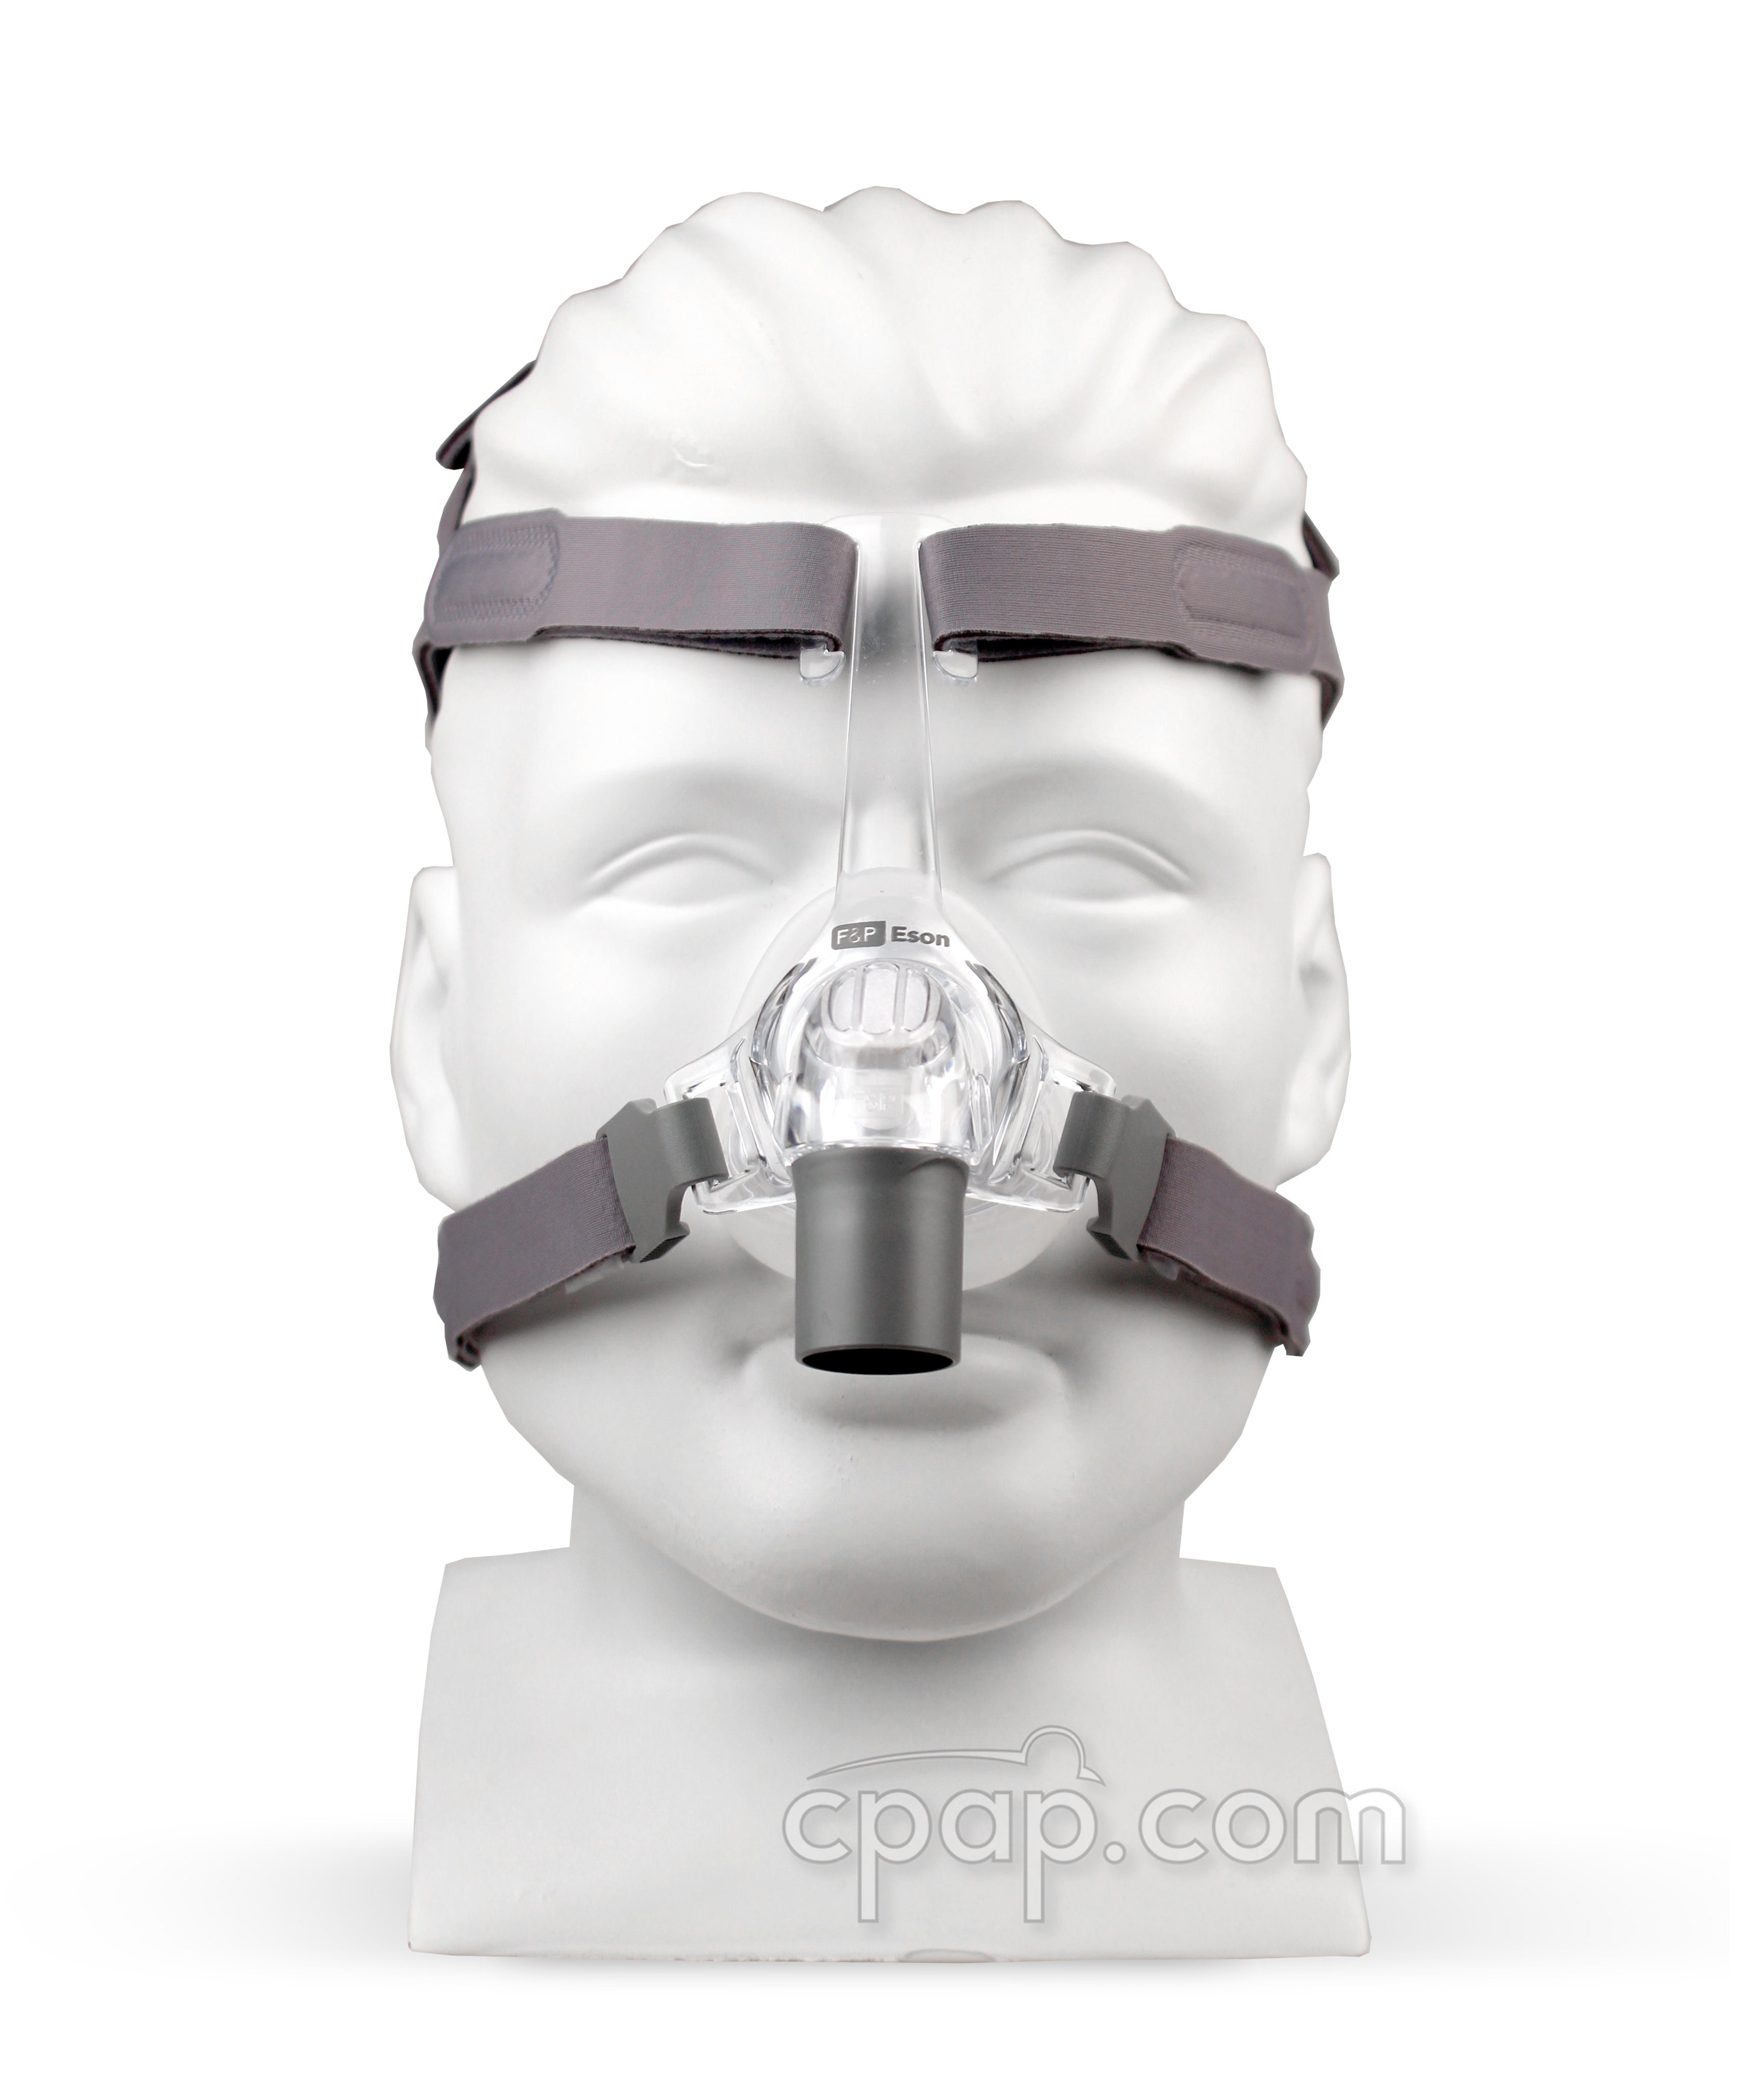 CPAP BIPAP маски. Назальная маска Eson Fisher & Paykel. Носовая сипап (CPAP) маска a, размер l. Маска для сипап аппарата